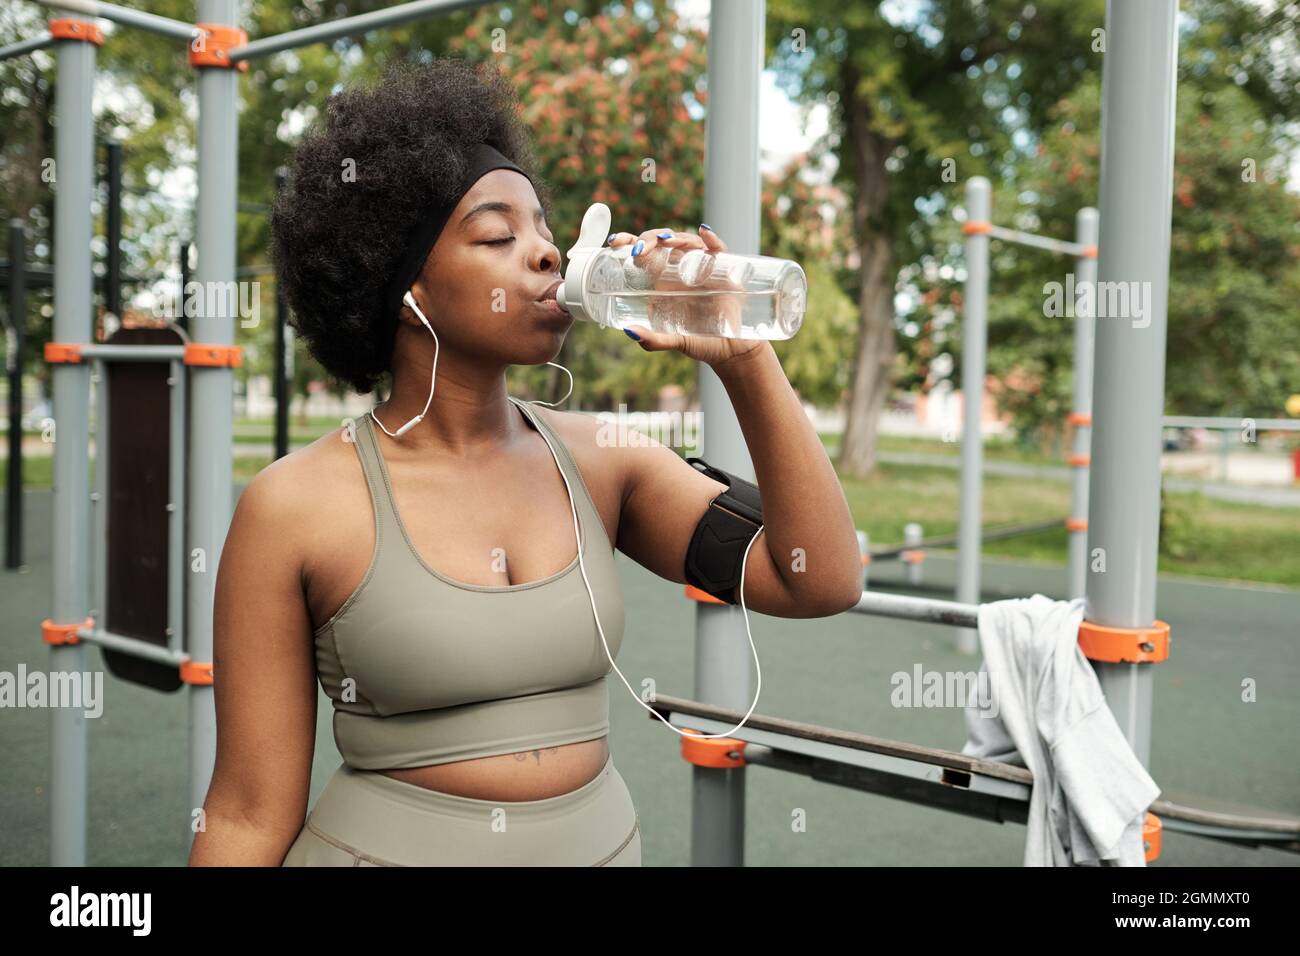 Durstige Sportlerin im Trainingsanzug mit Wasser, bevor sie das Sporttraining fortsetzt Stockfoto